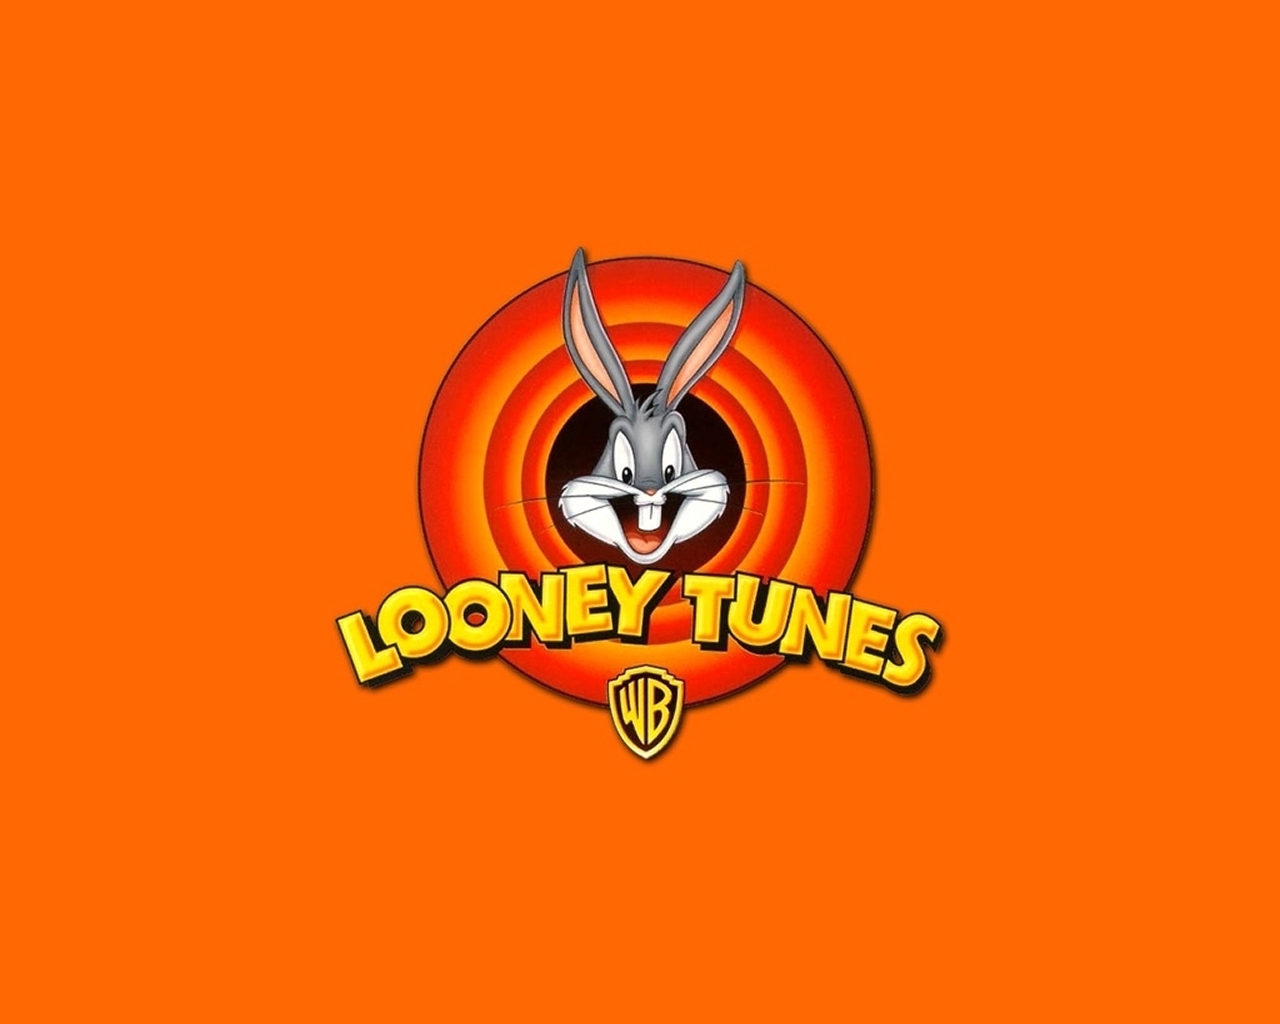 "Looney Tunes" desktop wallpaper number 2 (1280 x 1024 pixels)